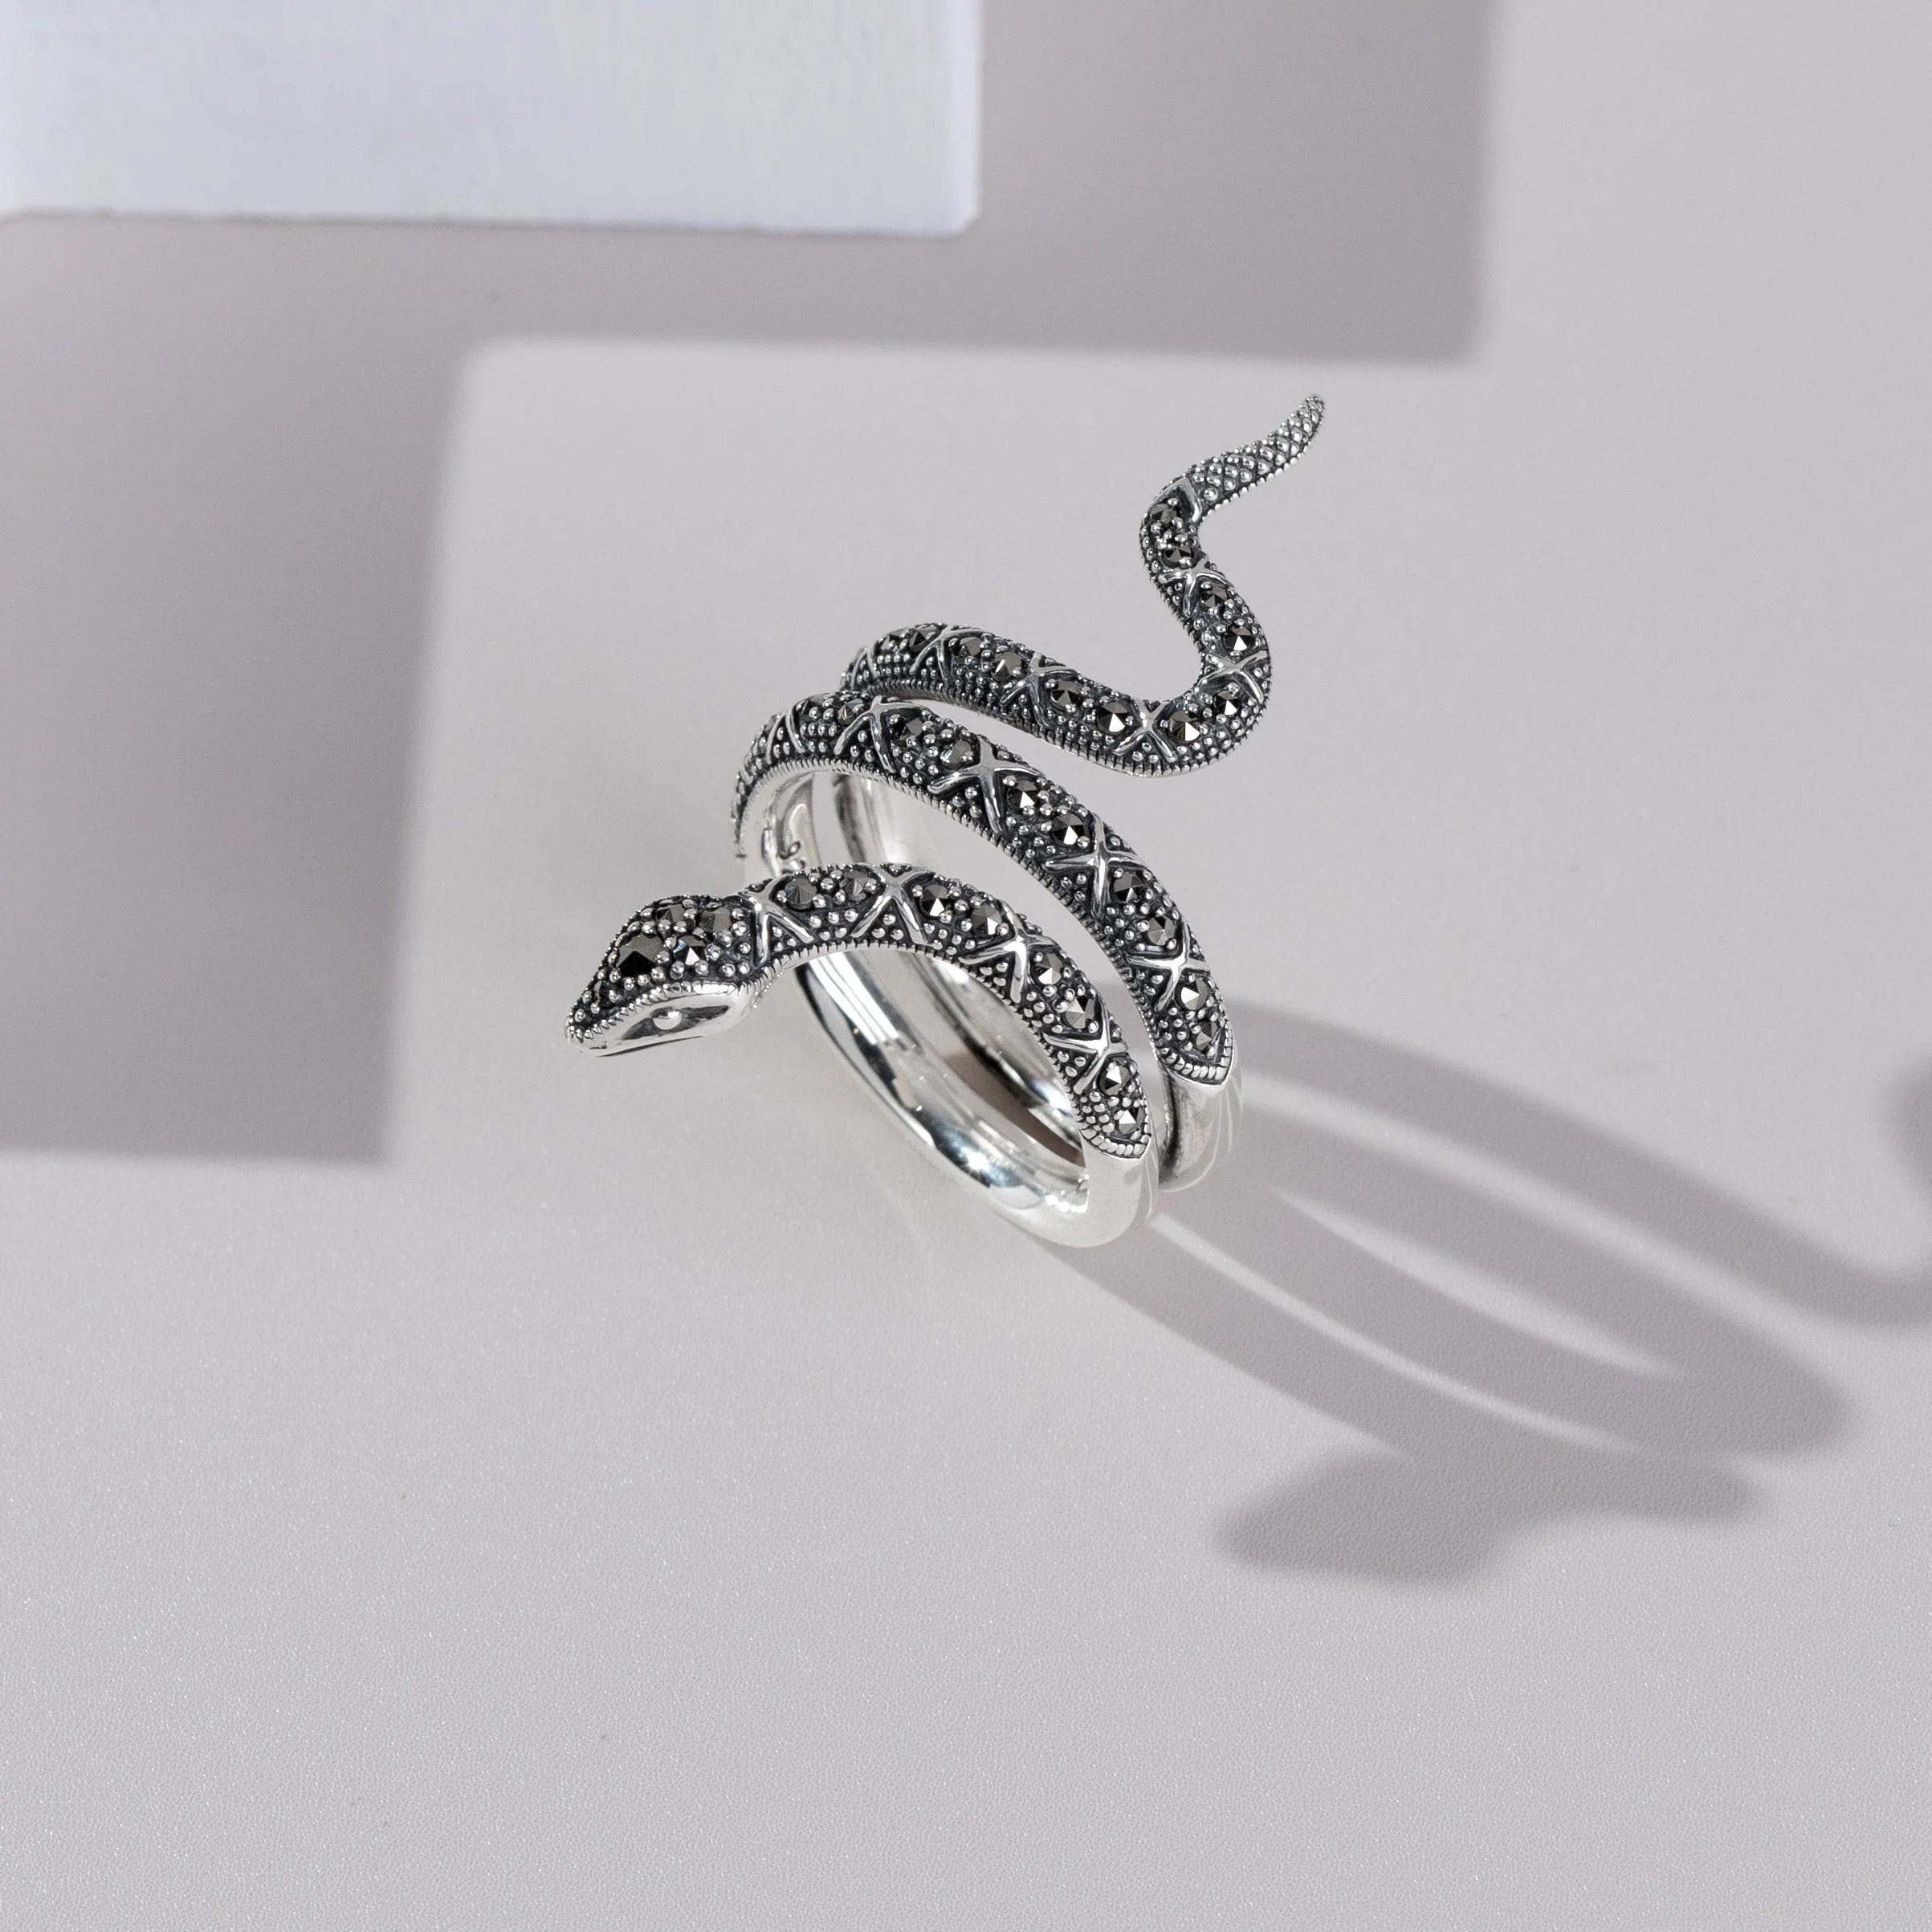 Anillo llamativo de serpiente de marcasita redonda estilo Art Nouveau en plata de ley 925